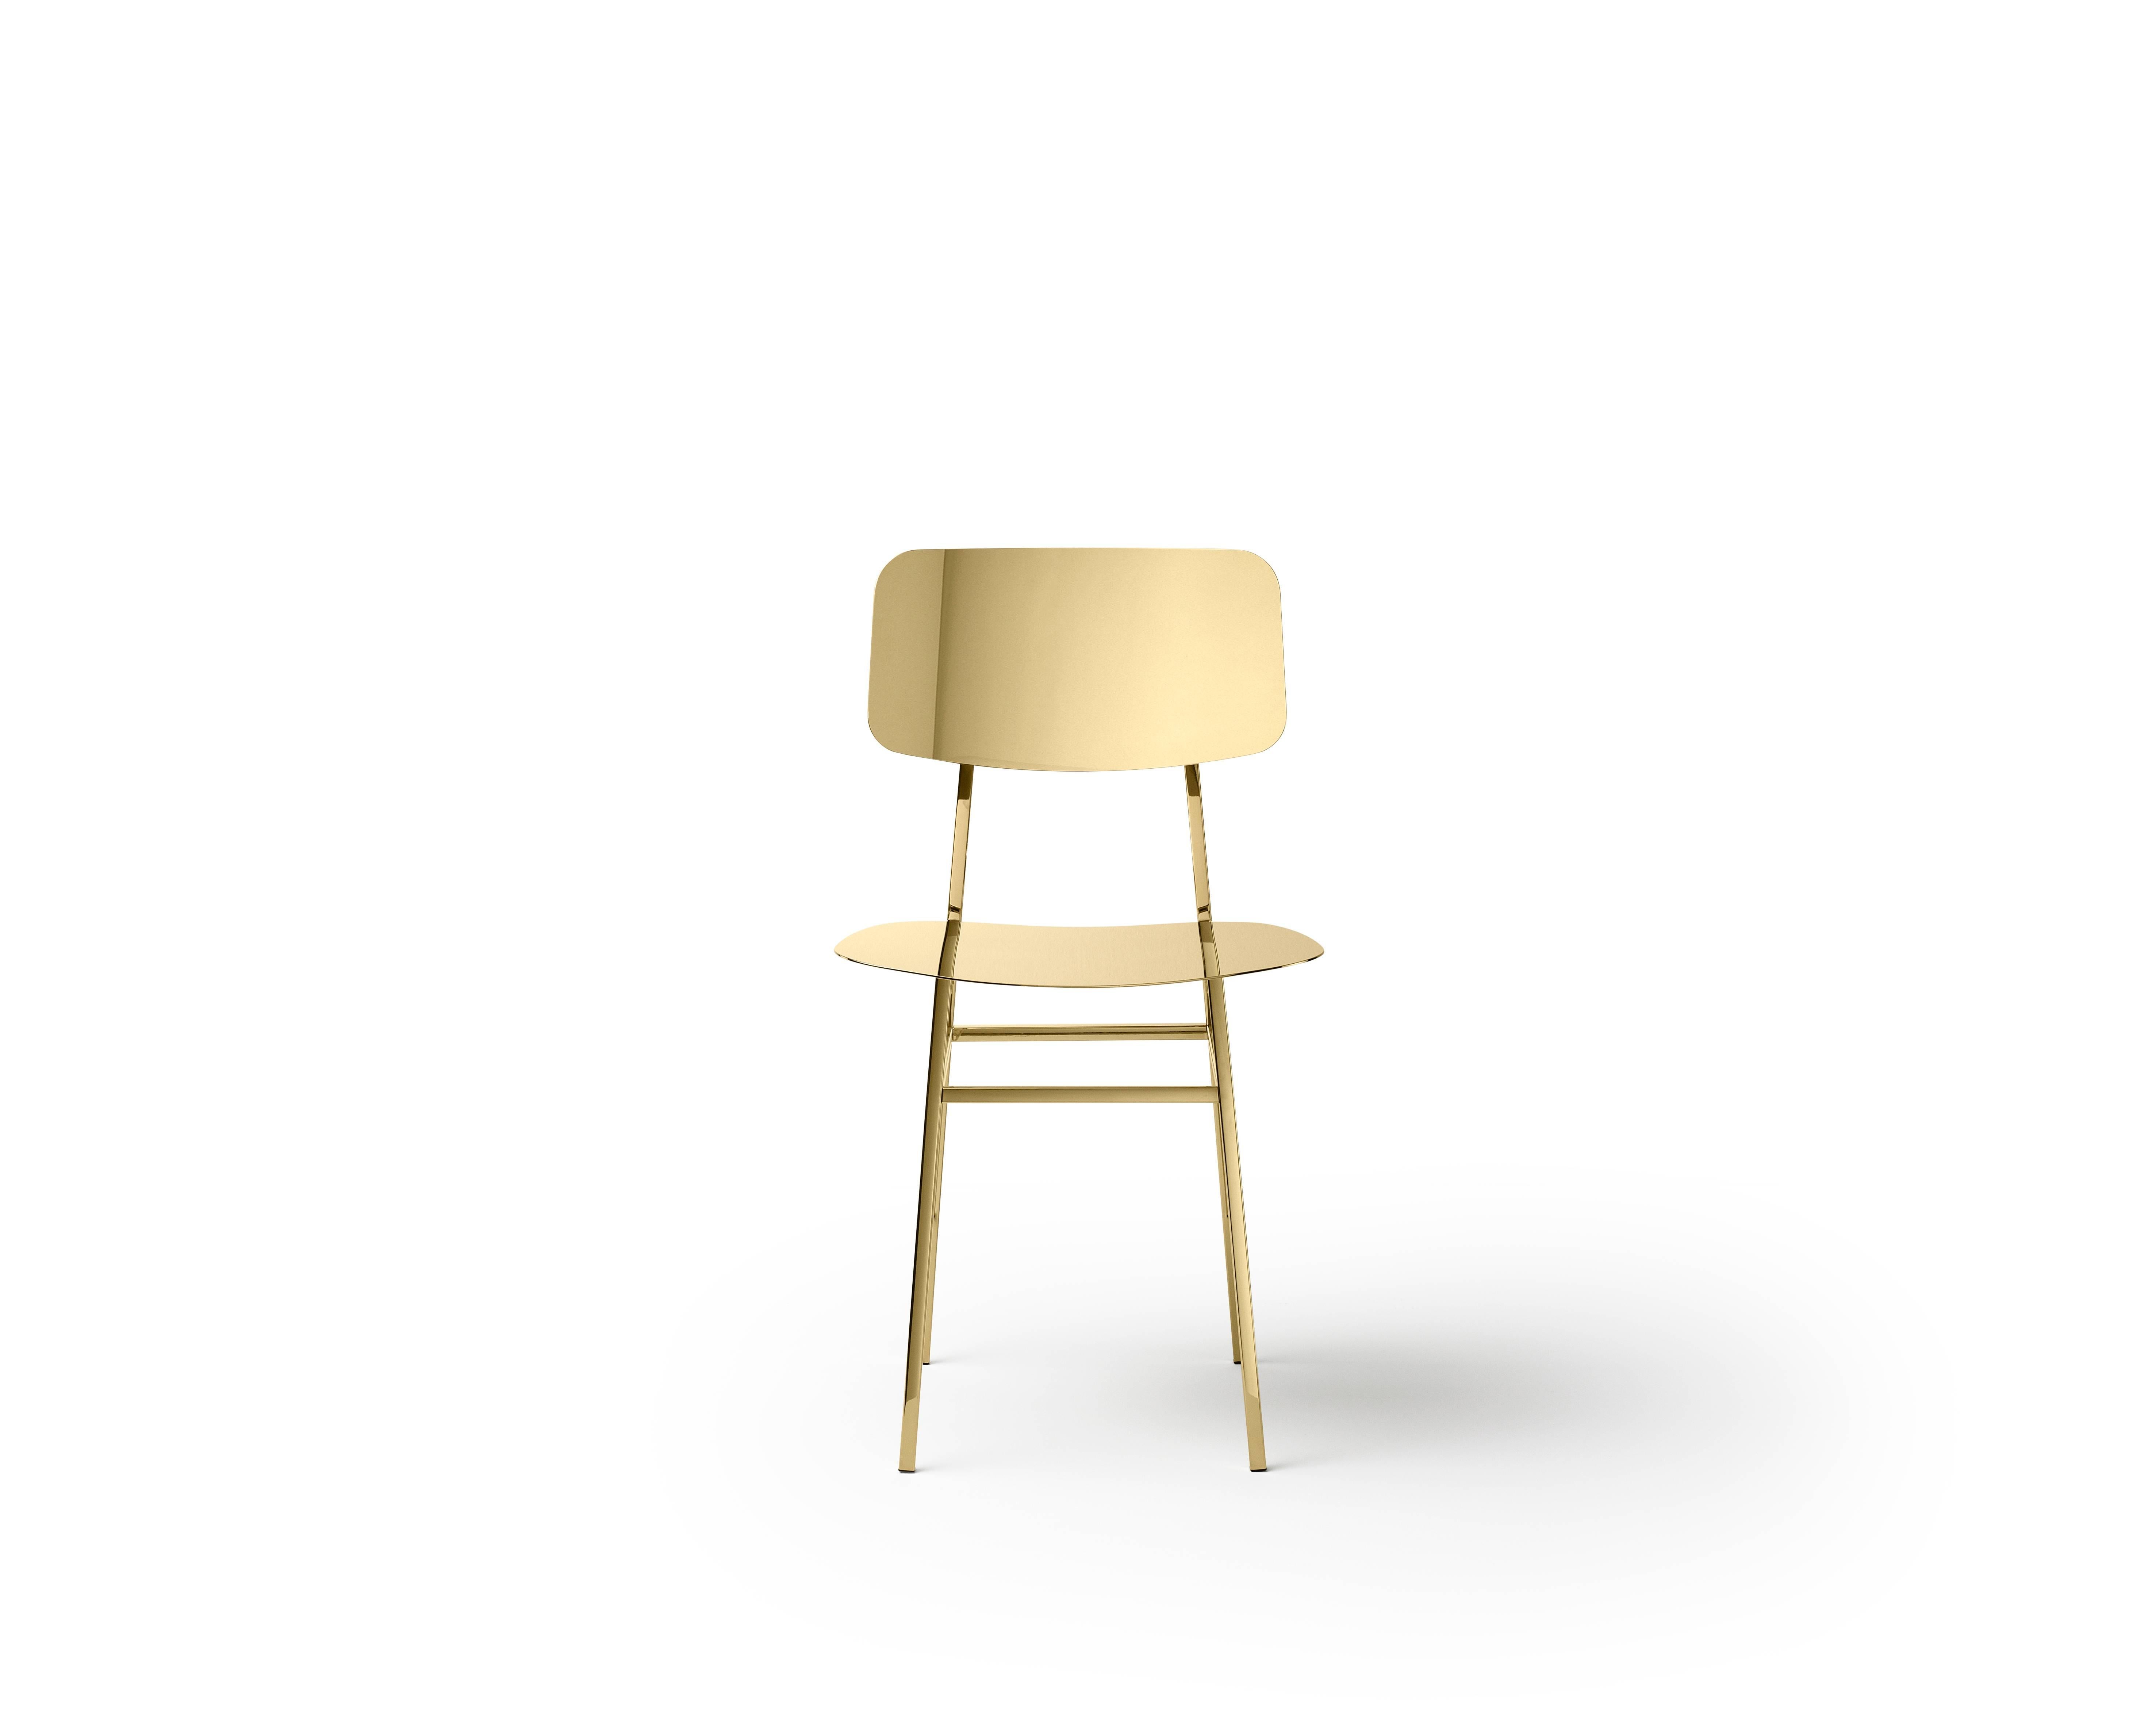 Chaise en acier inoxydable avec finition en laiton poli, conçue par Nika Zupanc.